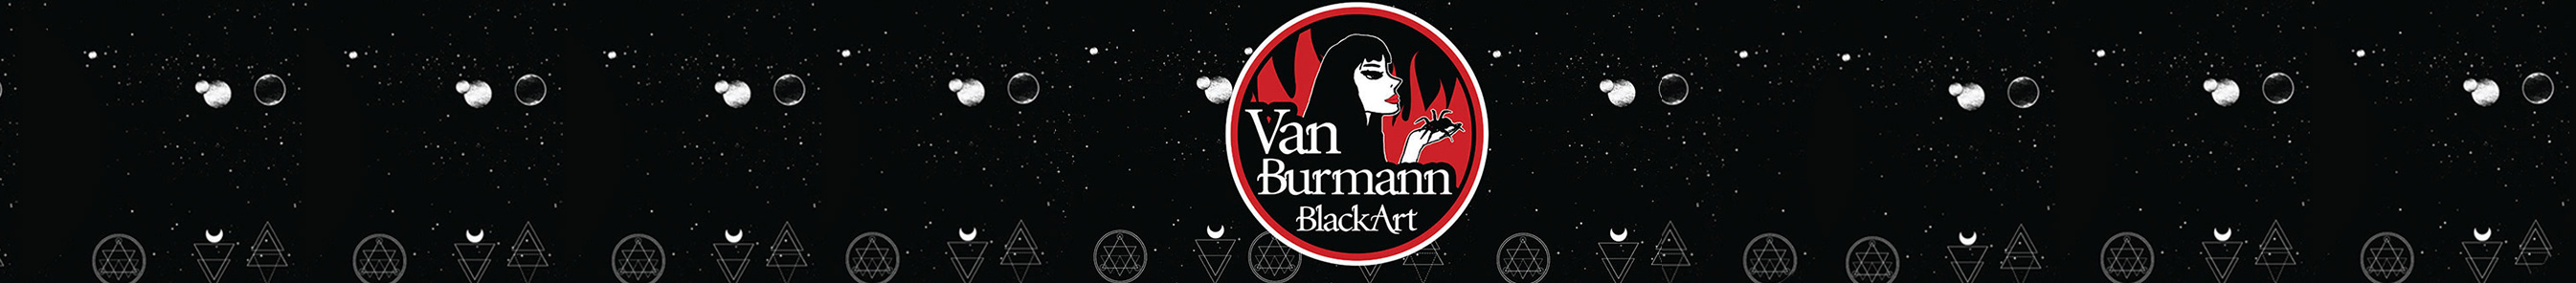 Van Burmann's profile banner